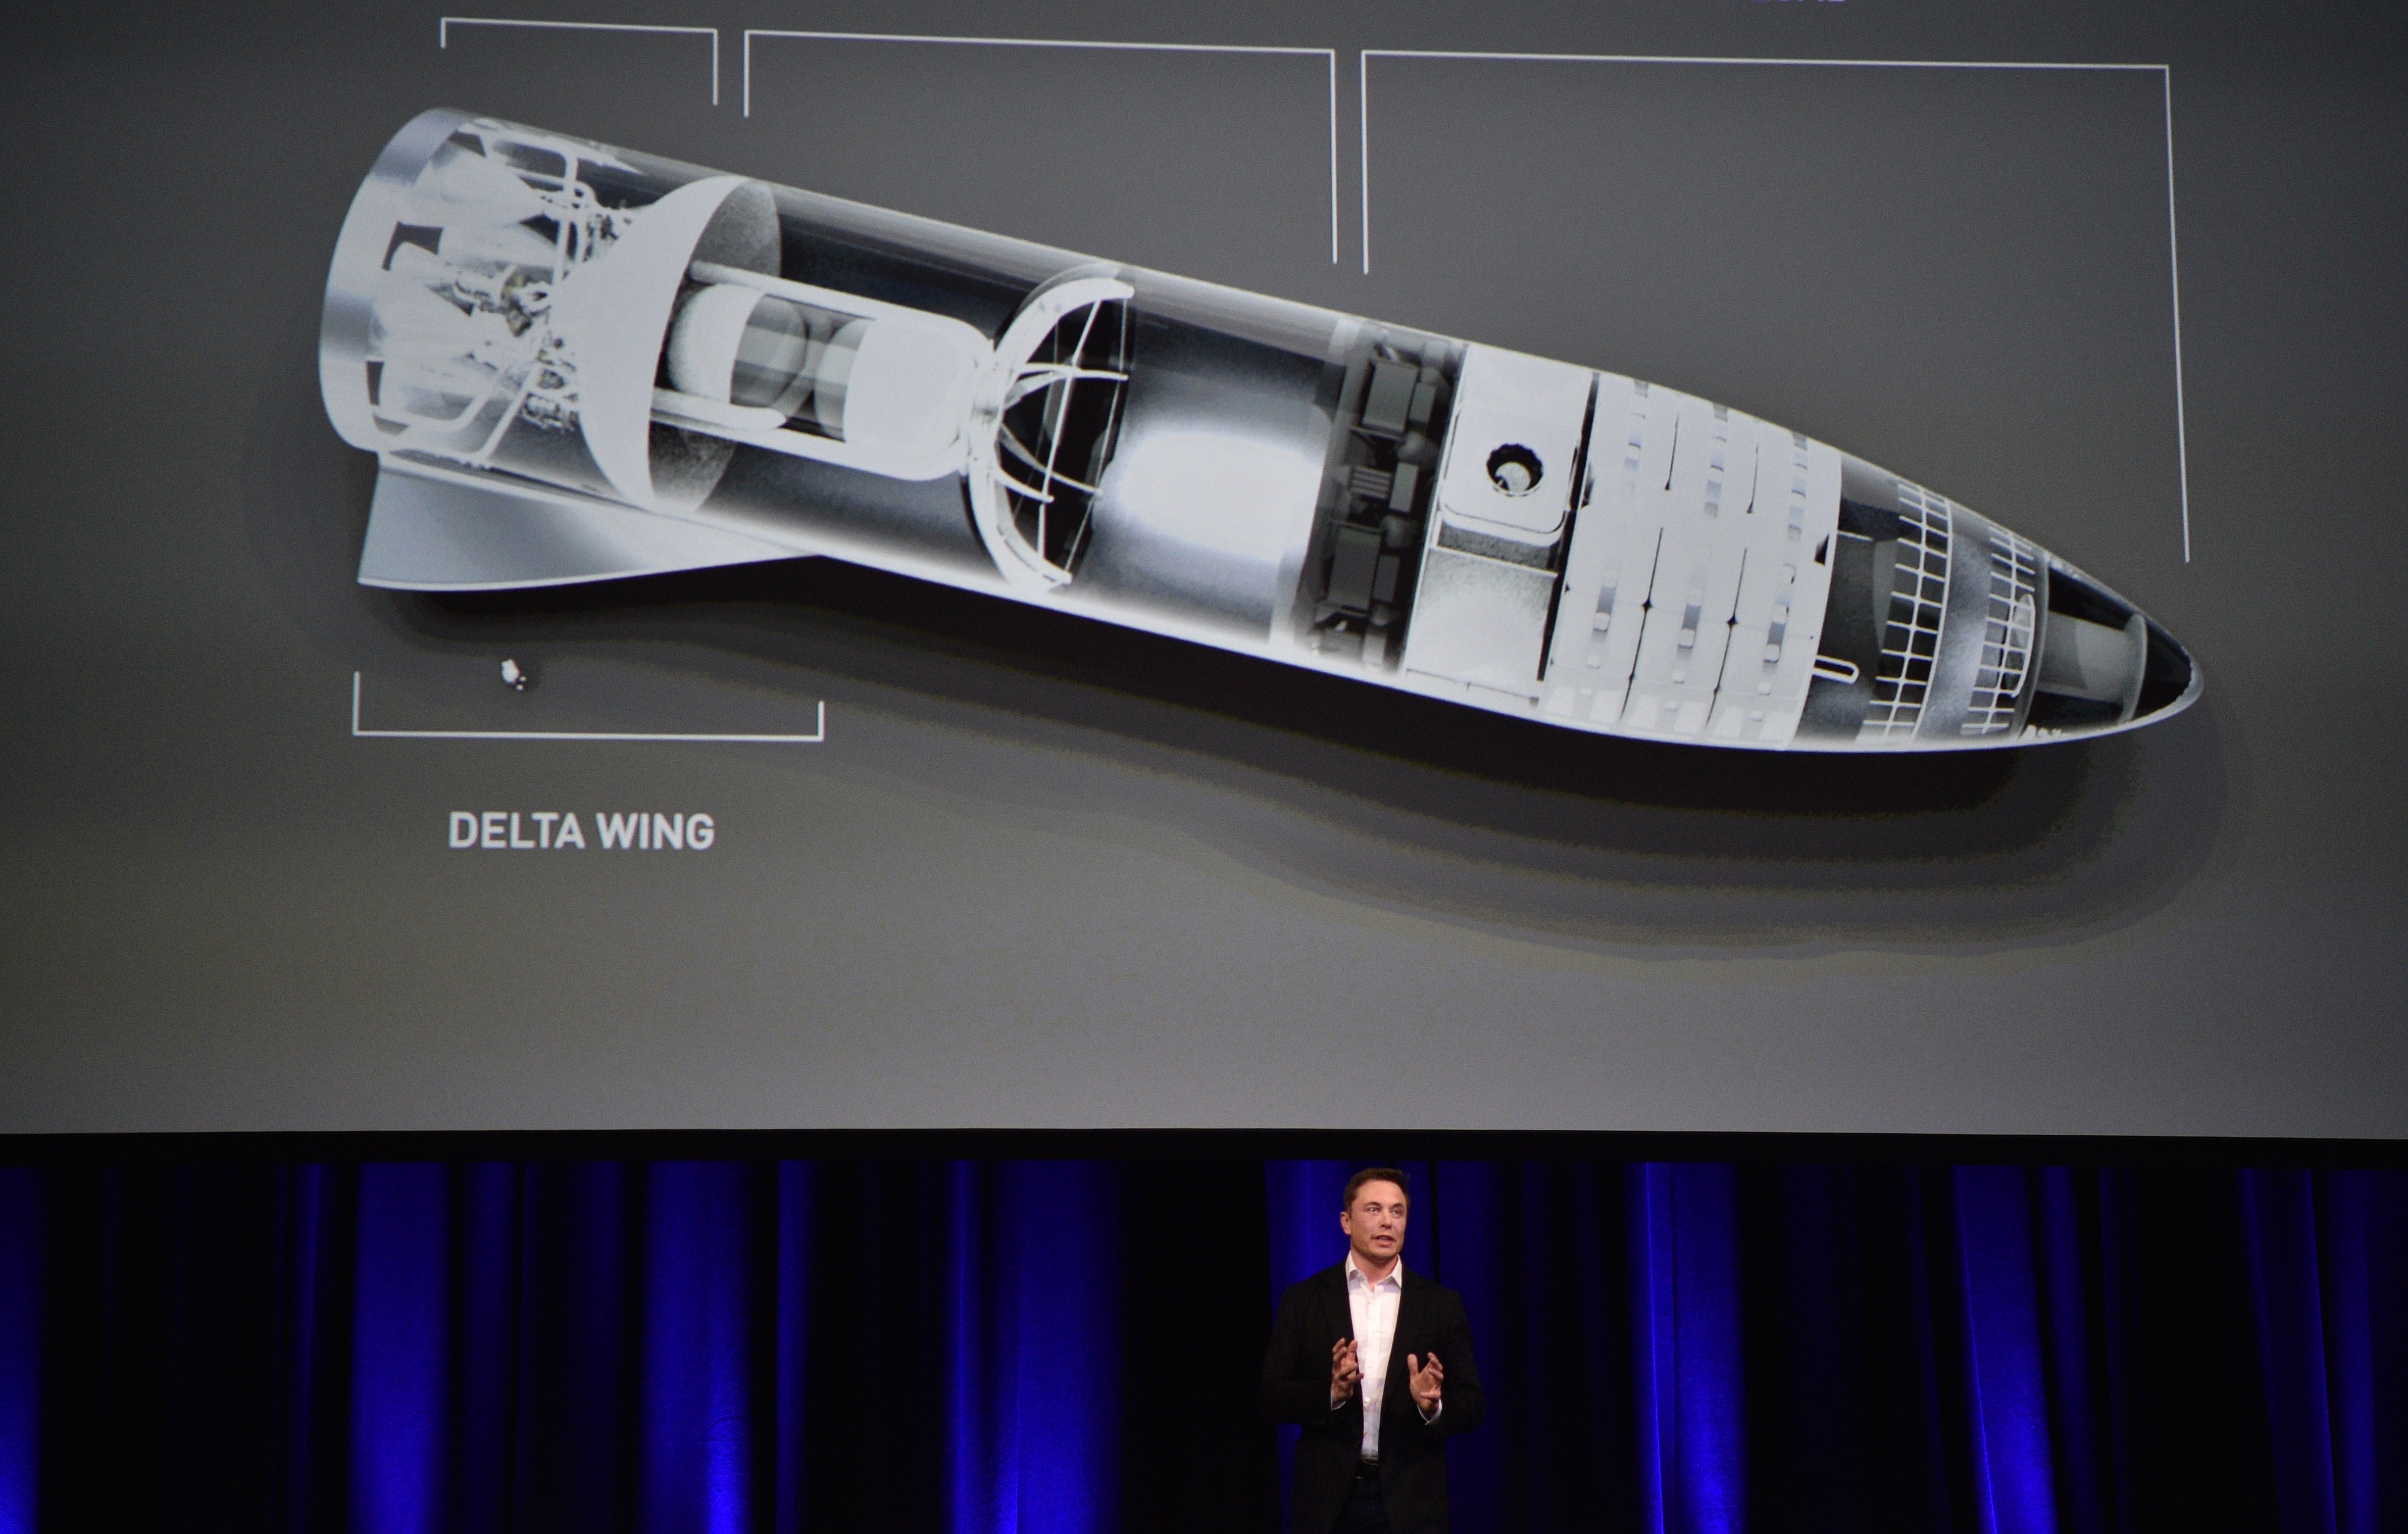 El empresario multimillonario y fundador de SpaceX Elon Musk habla debajo de una ilustración generada por computadora de su nuevo cohete en el 68o Congreso Astronáutico Internacional 2017 en Adelaida el 29 de septiembre de 2017. Musk dijo que su compañía SpaceX ha comenzado un trabajo serio en el cohete BFR como él planea un sistema de transporte interplanetario.&nbsp;